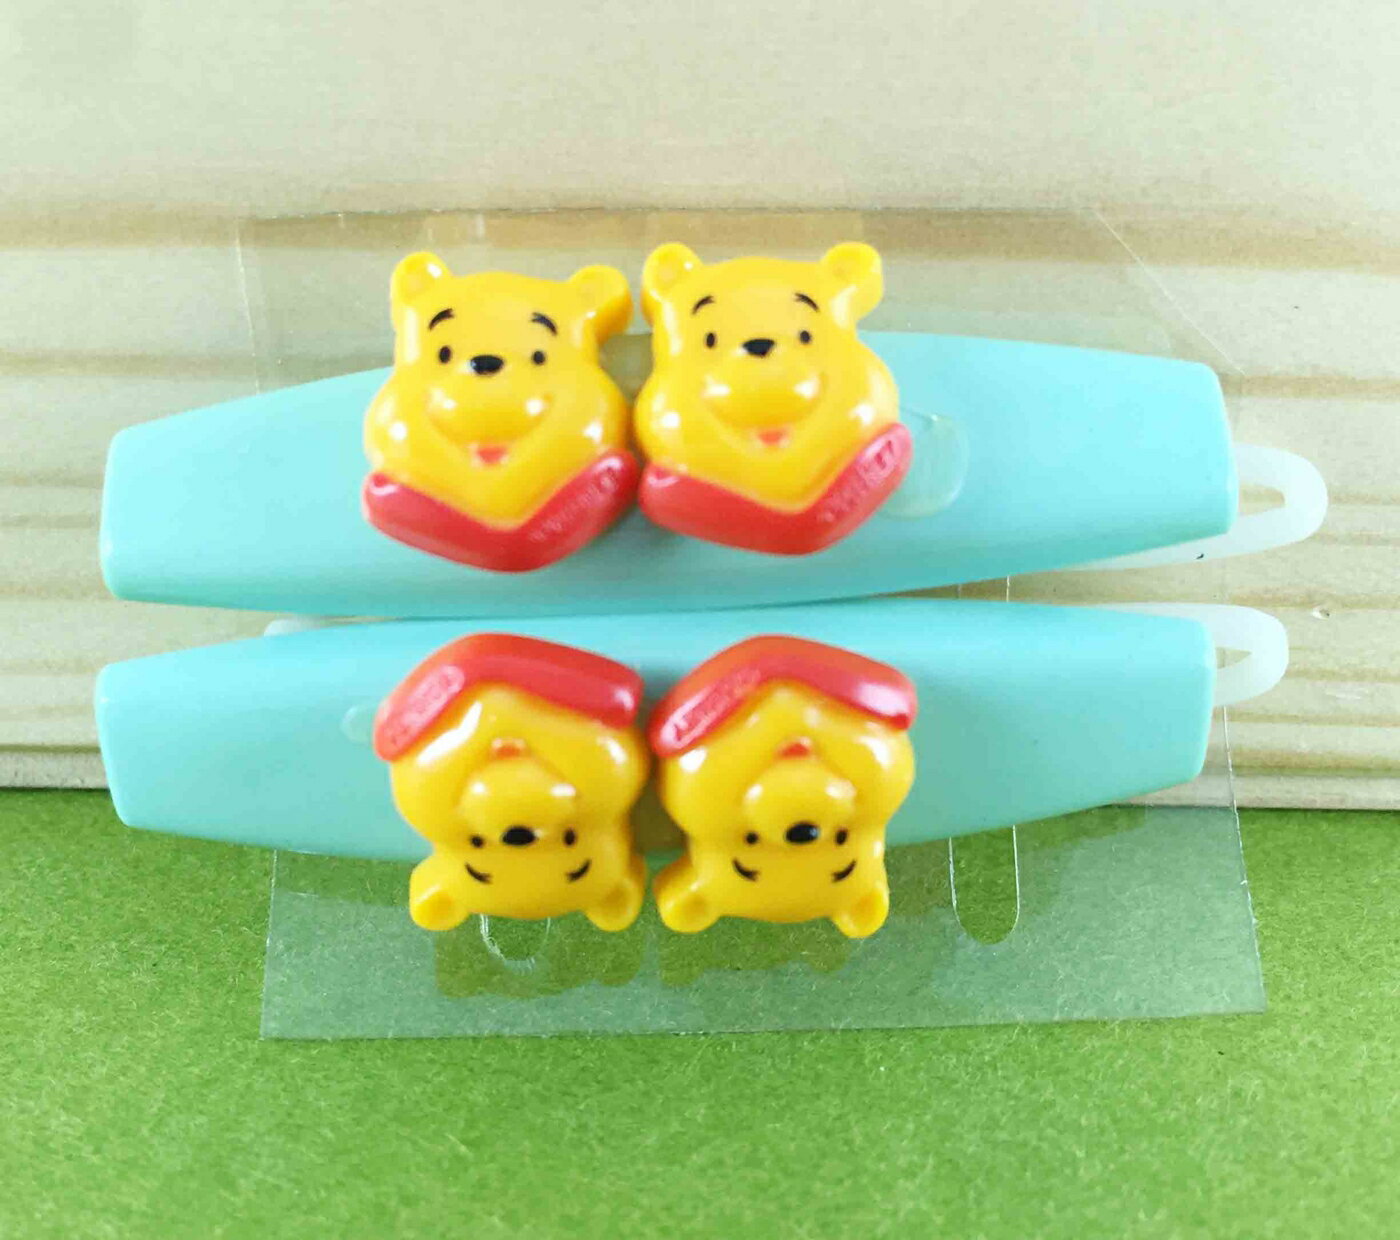 【震撼精品百貨】Winnie the Pooh 小熊維尼 2入髮夾-藍綠 震撼日式精品百貨